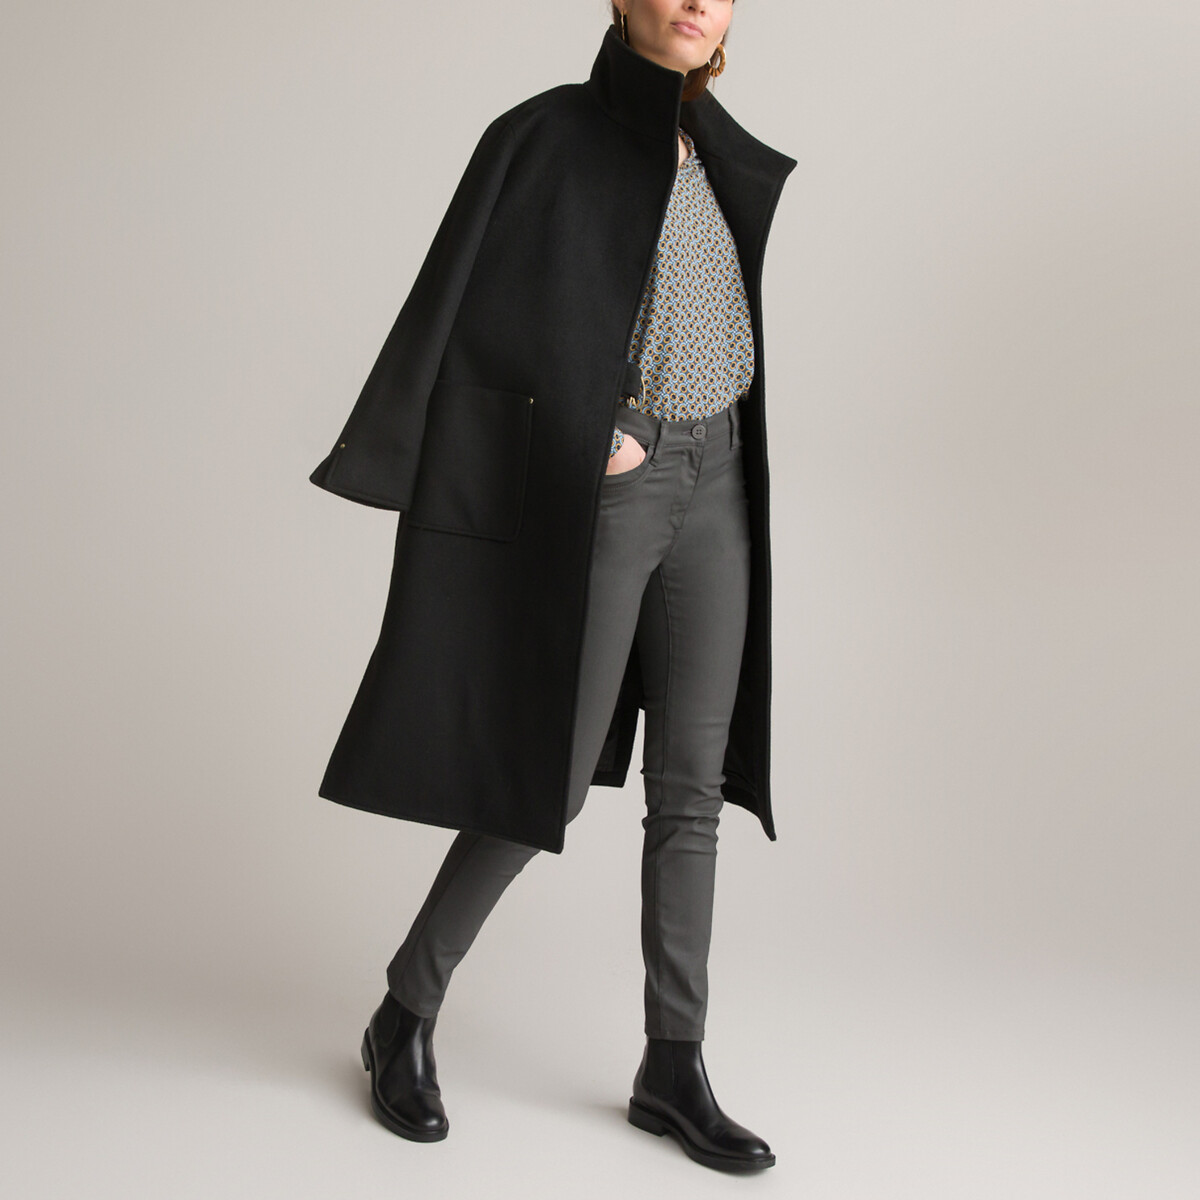 Пальто Длинное асимметричное с завязками 36 (FR) - 42 (RUS) черный LaRedoute, размер 36 (FR) - 42 (RUS) Пальто Длинное асимметричное с завязками 36 (FR) - 42 (RUS) черный - фото 2